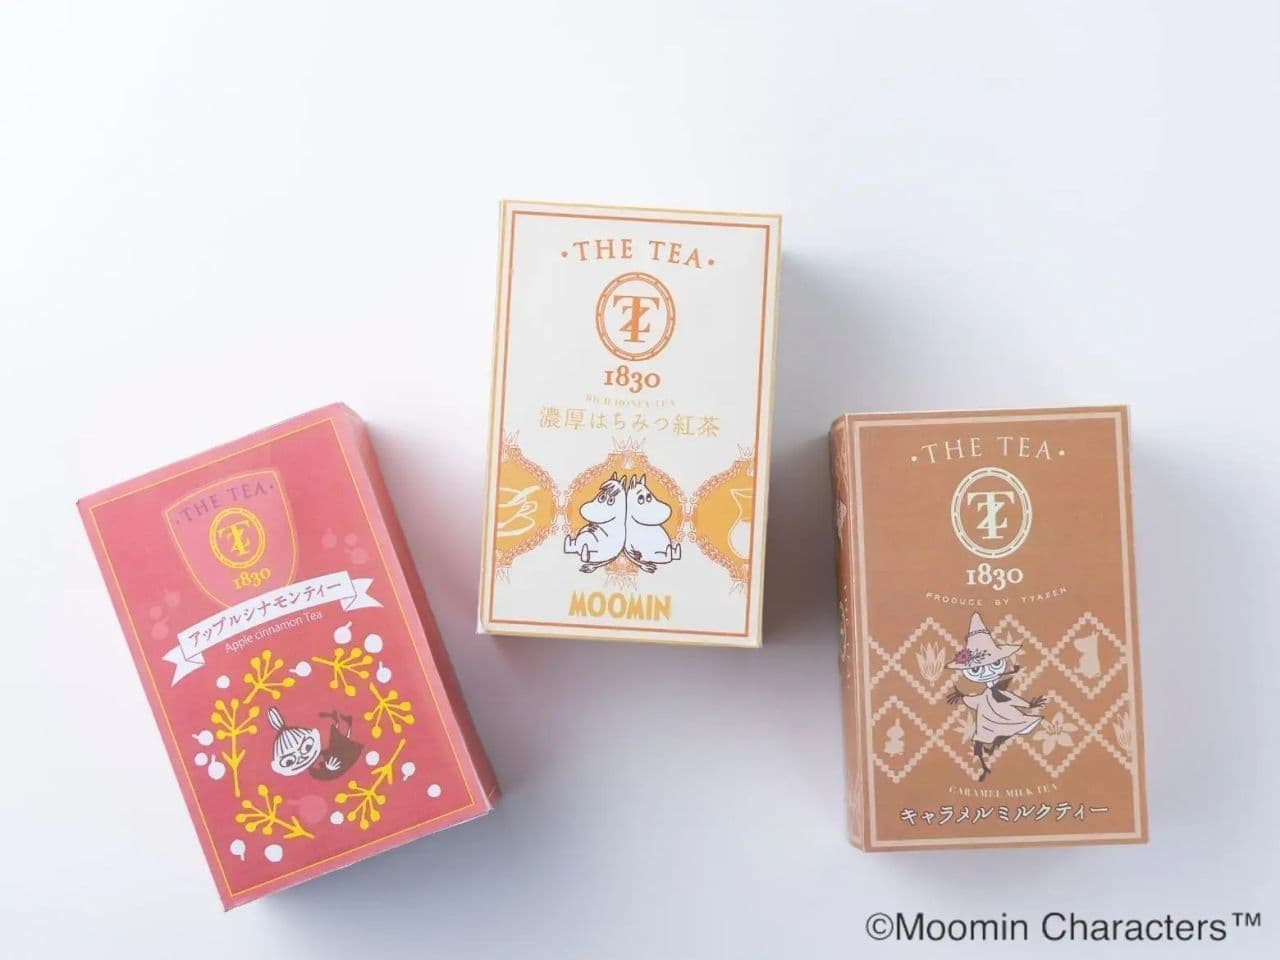 Moomin flavored teas: "Thick Honey Black Tea," "Apple Cinnamon Tea," and "Caramel Milk Tea